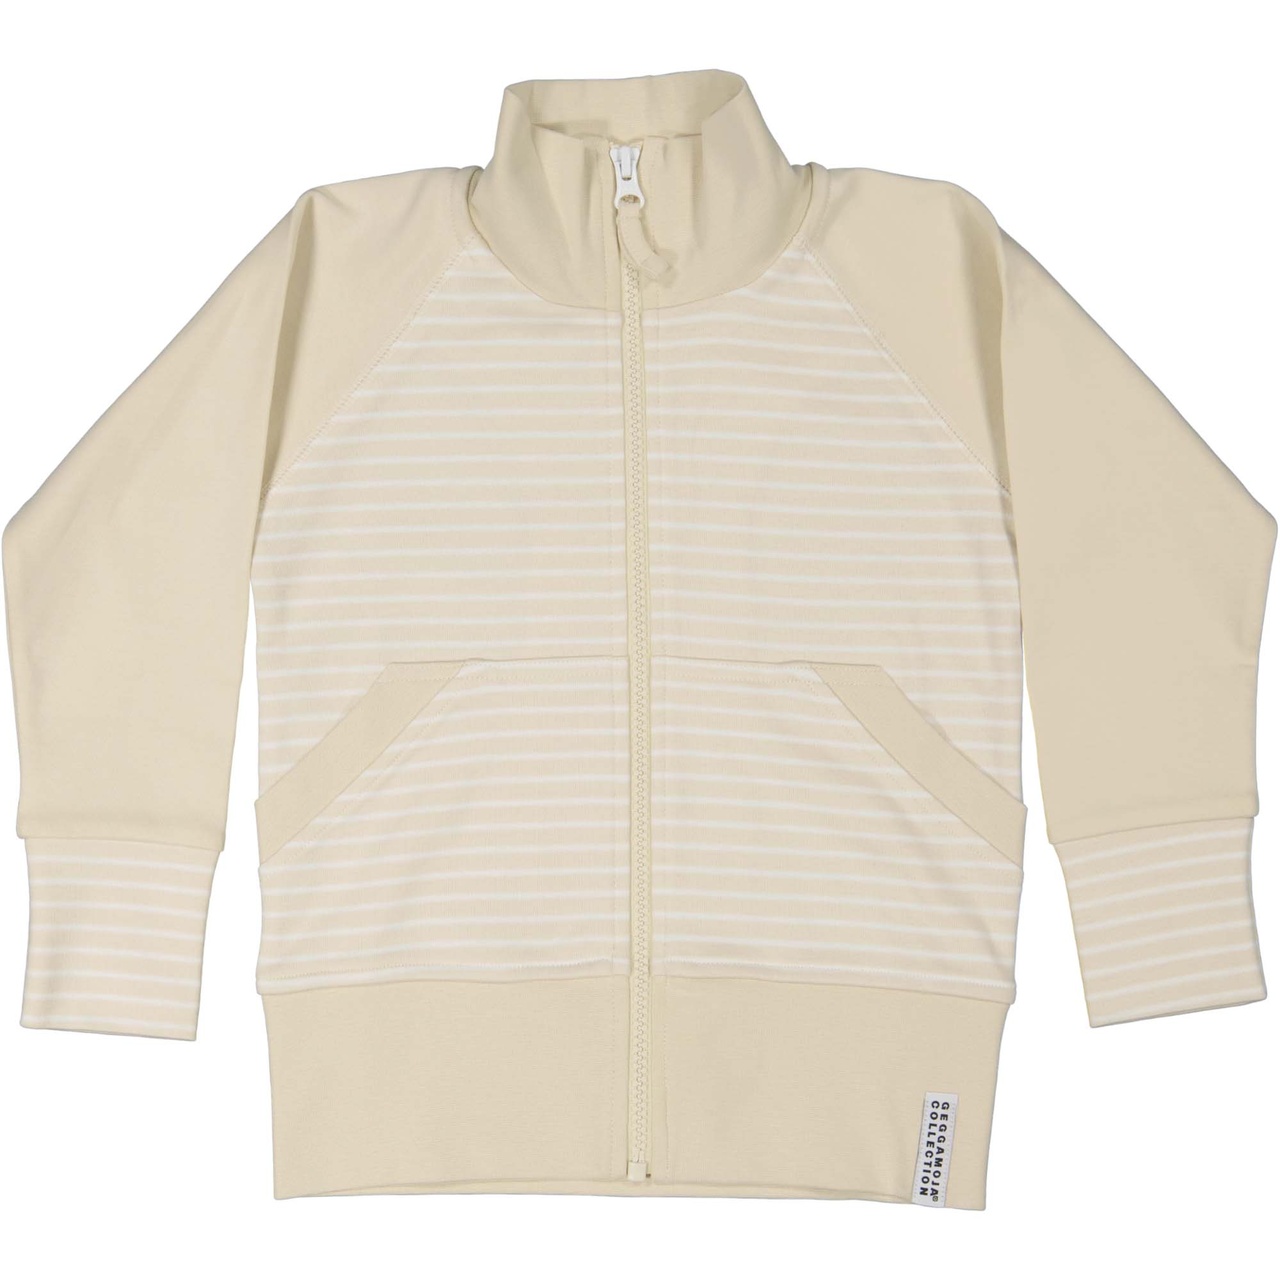 Zip sweater Beige/white 134/140